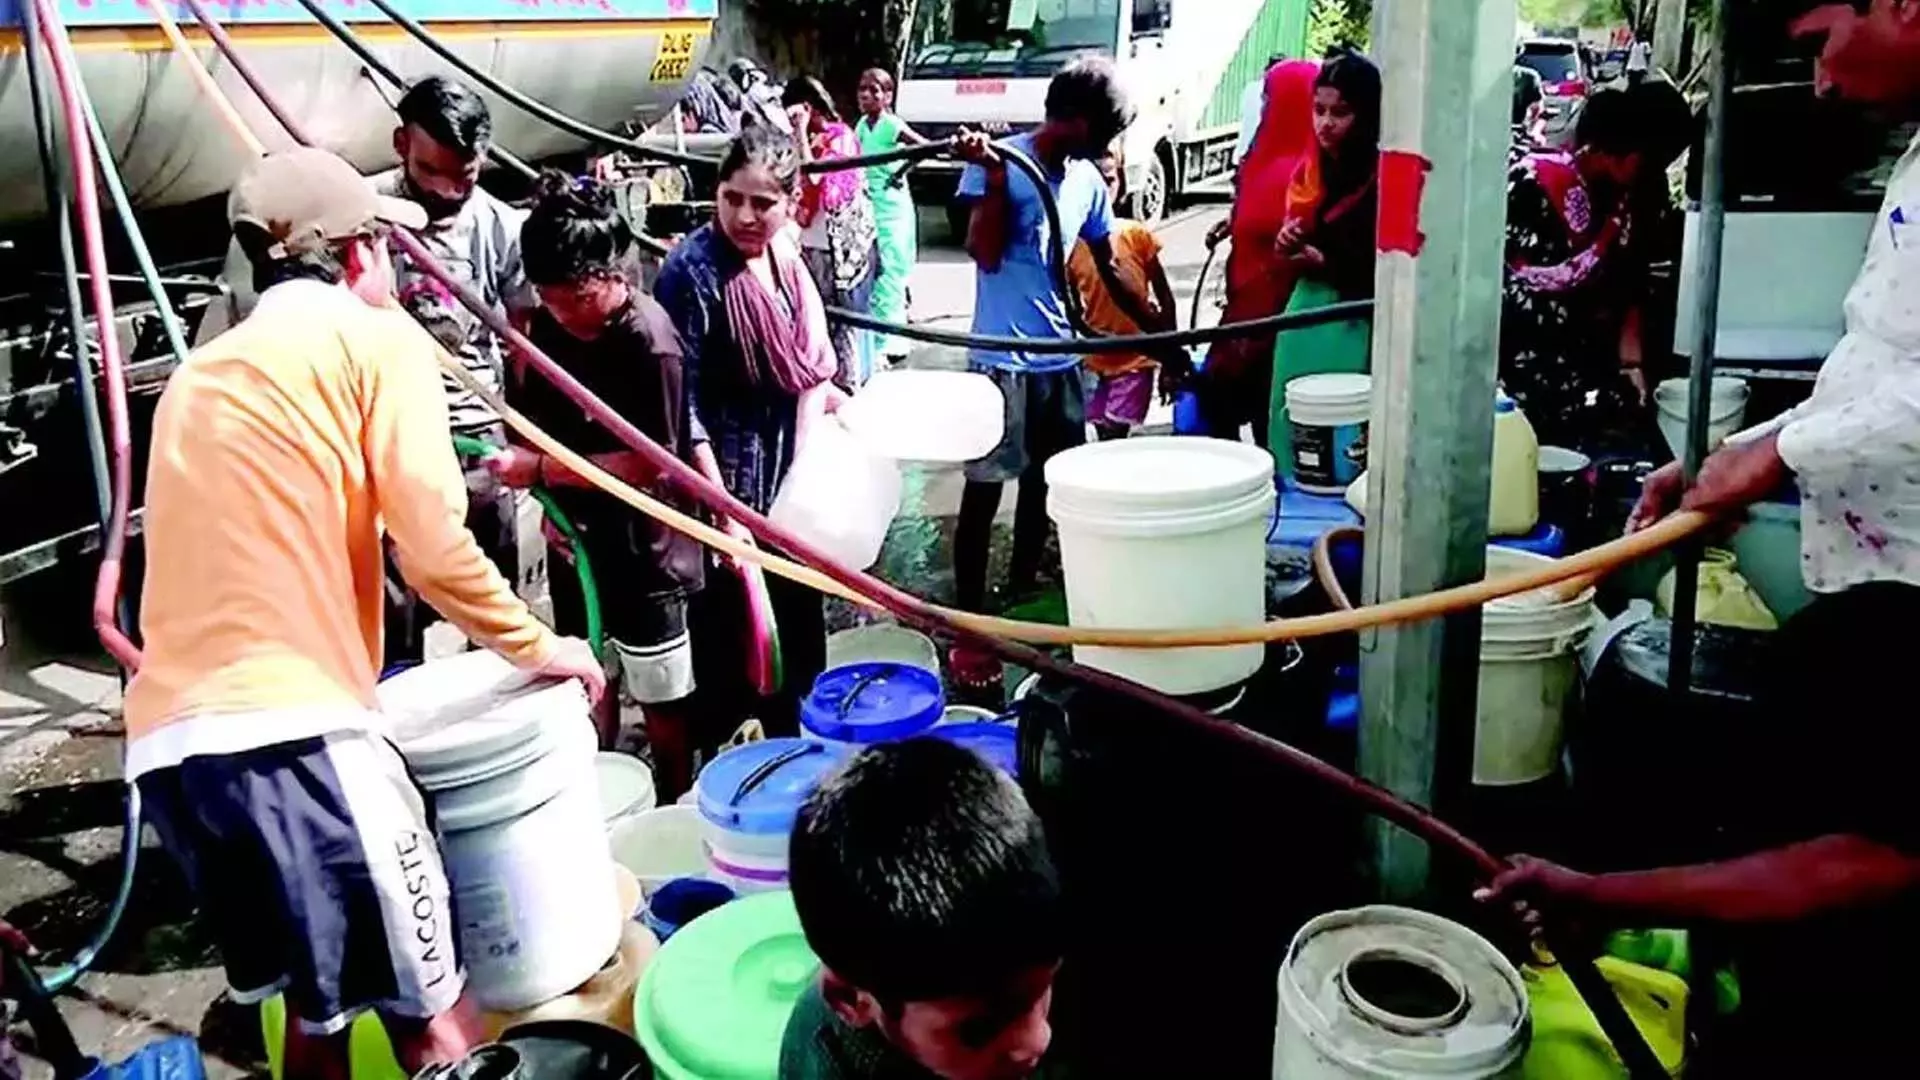 delhi water problem: दिल्ली सरकार ने पानी की कमी पर सुप्रीम कोर्ट से हस्तक्षेप की मांग की